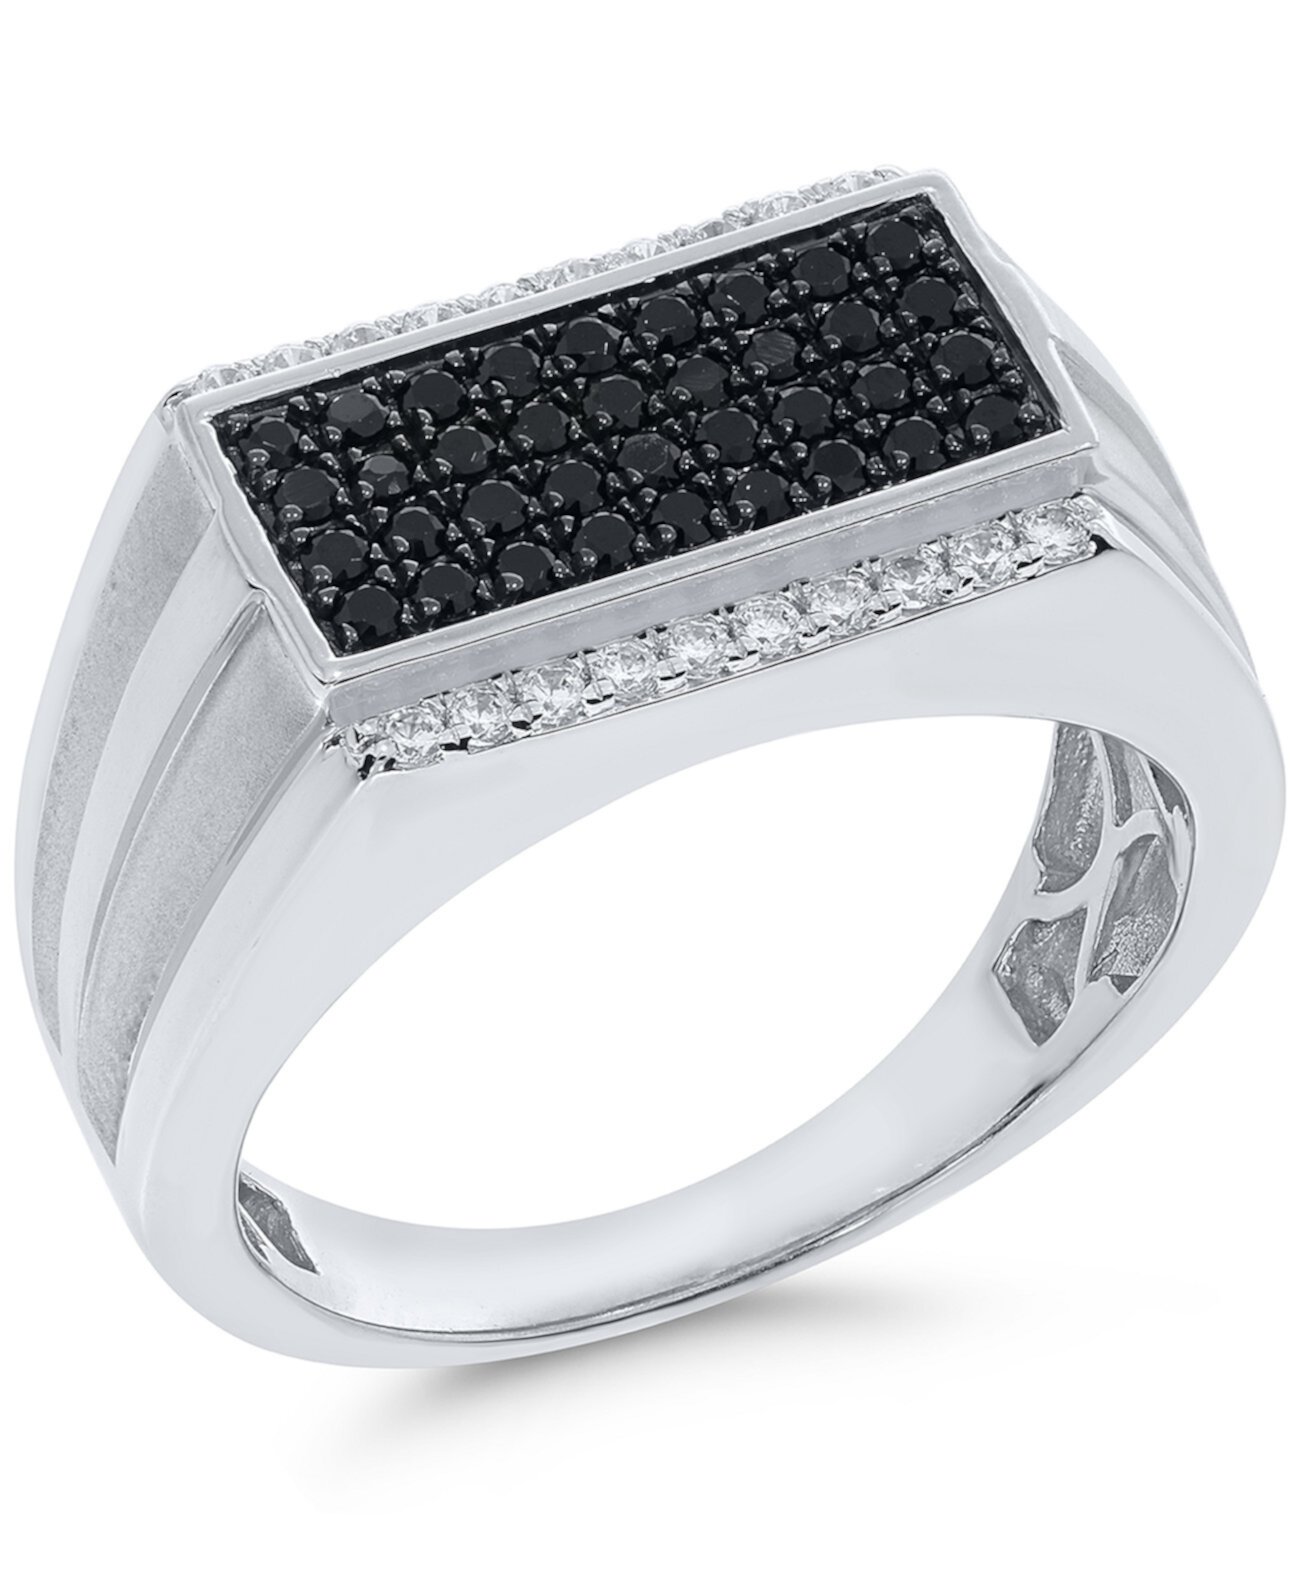 Мужское черно-белое кольцо с кластером с бриллиантами (3/4 карата) из стерлингового серебра Macy's